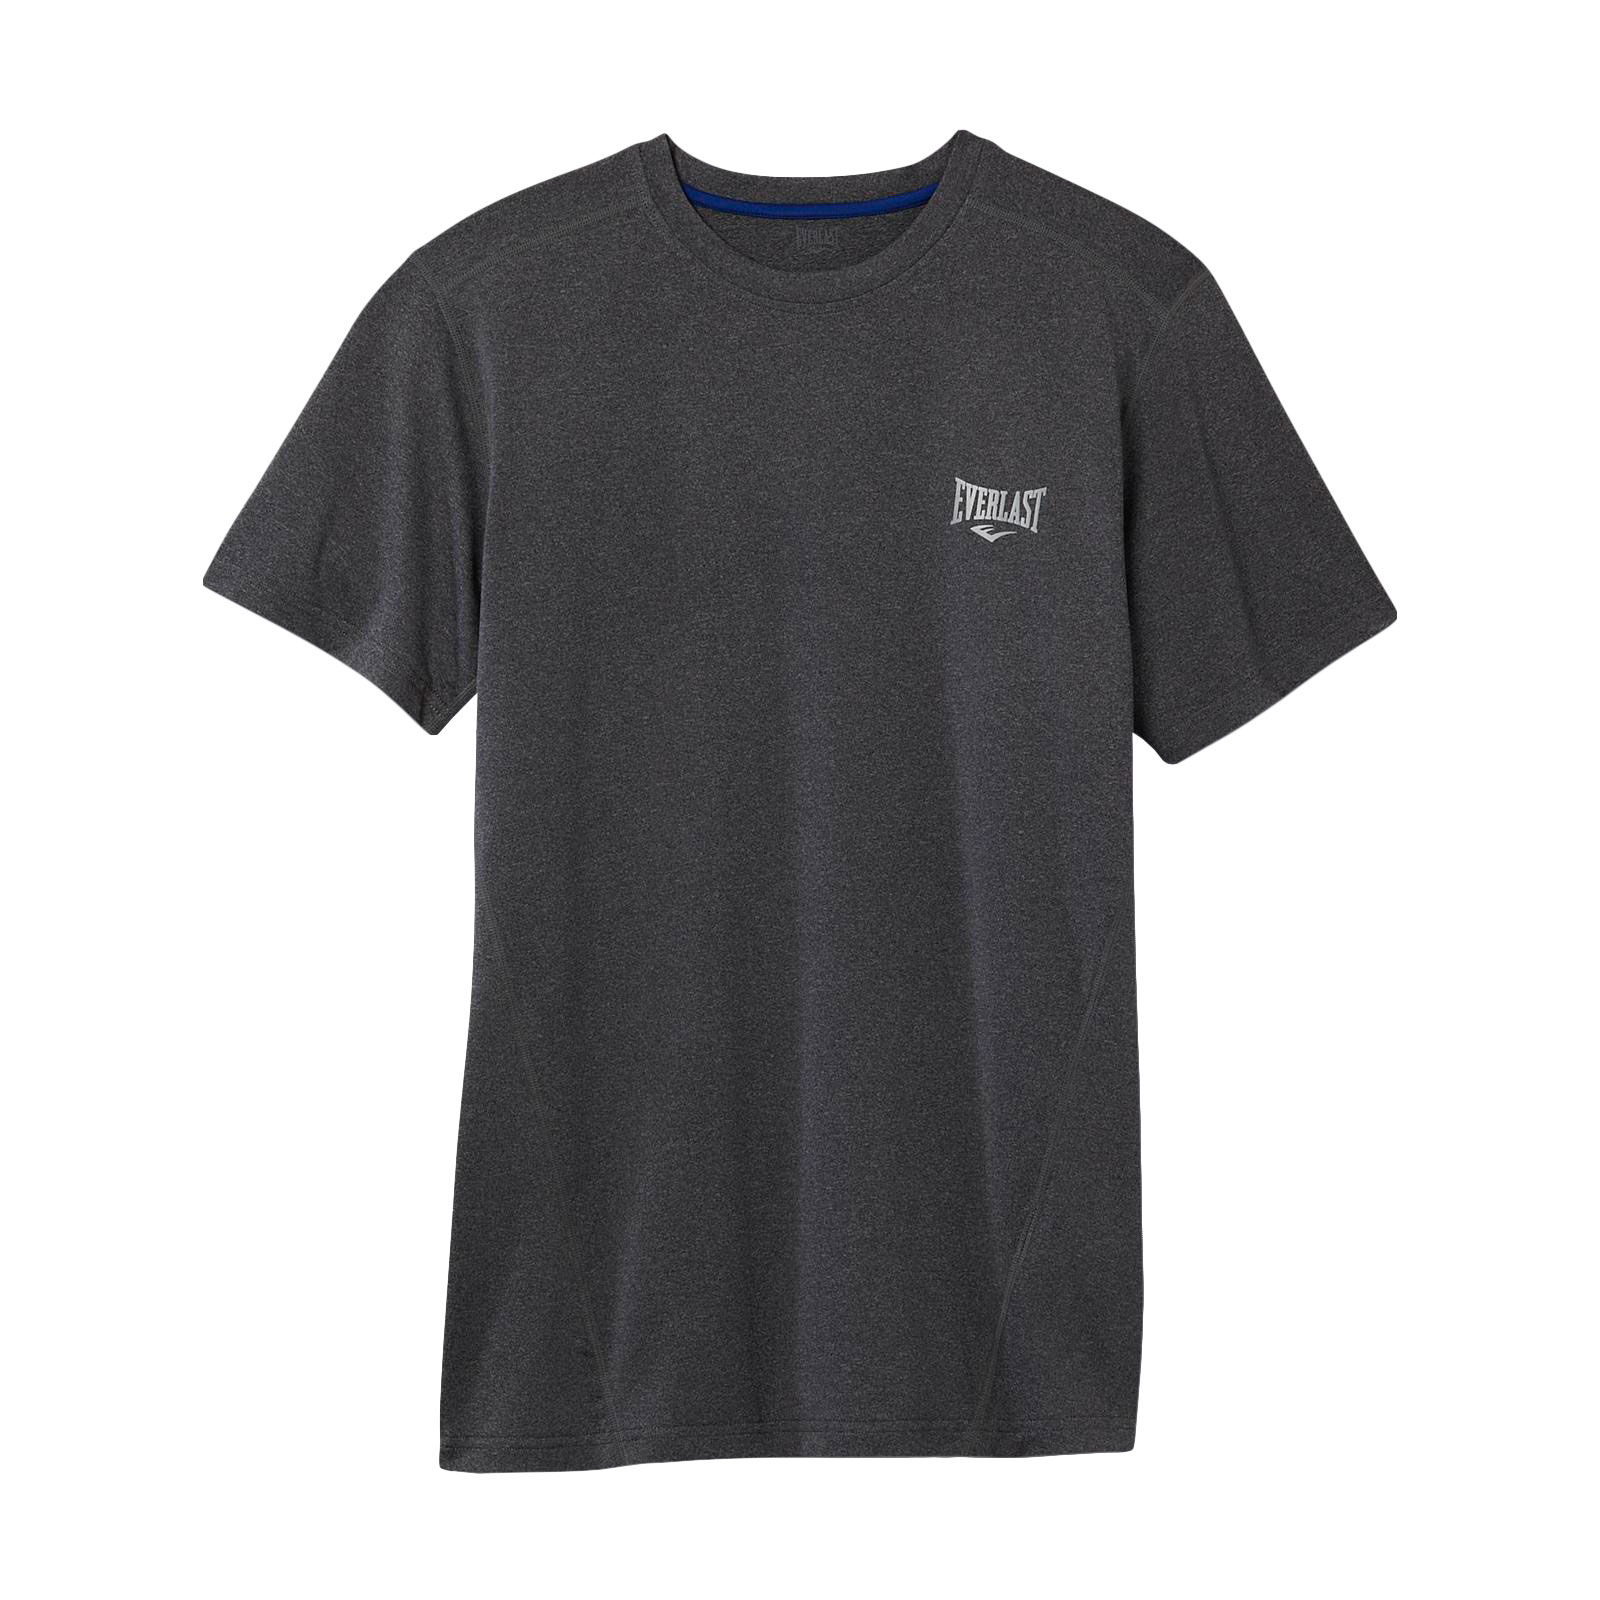 Everlast&reg; Men's Fitted Athletic T-Shirt - Logo